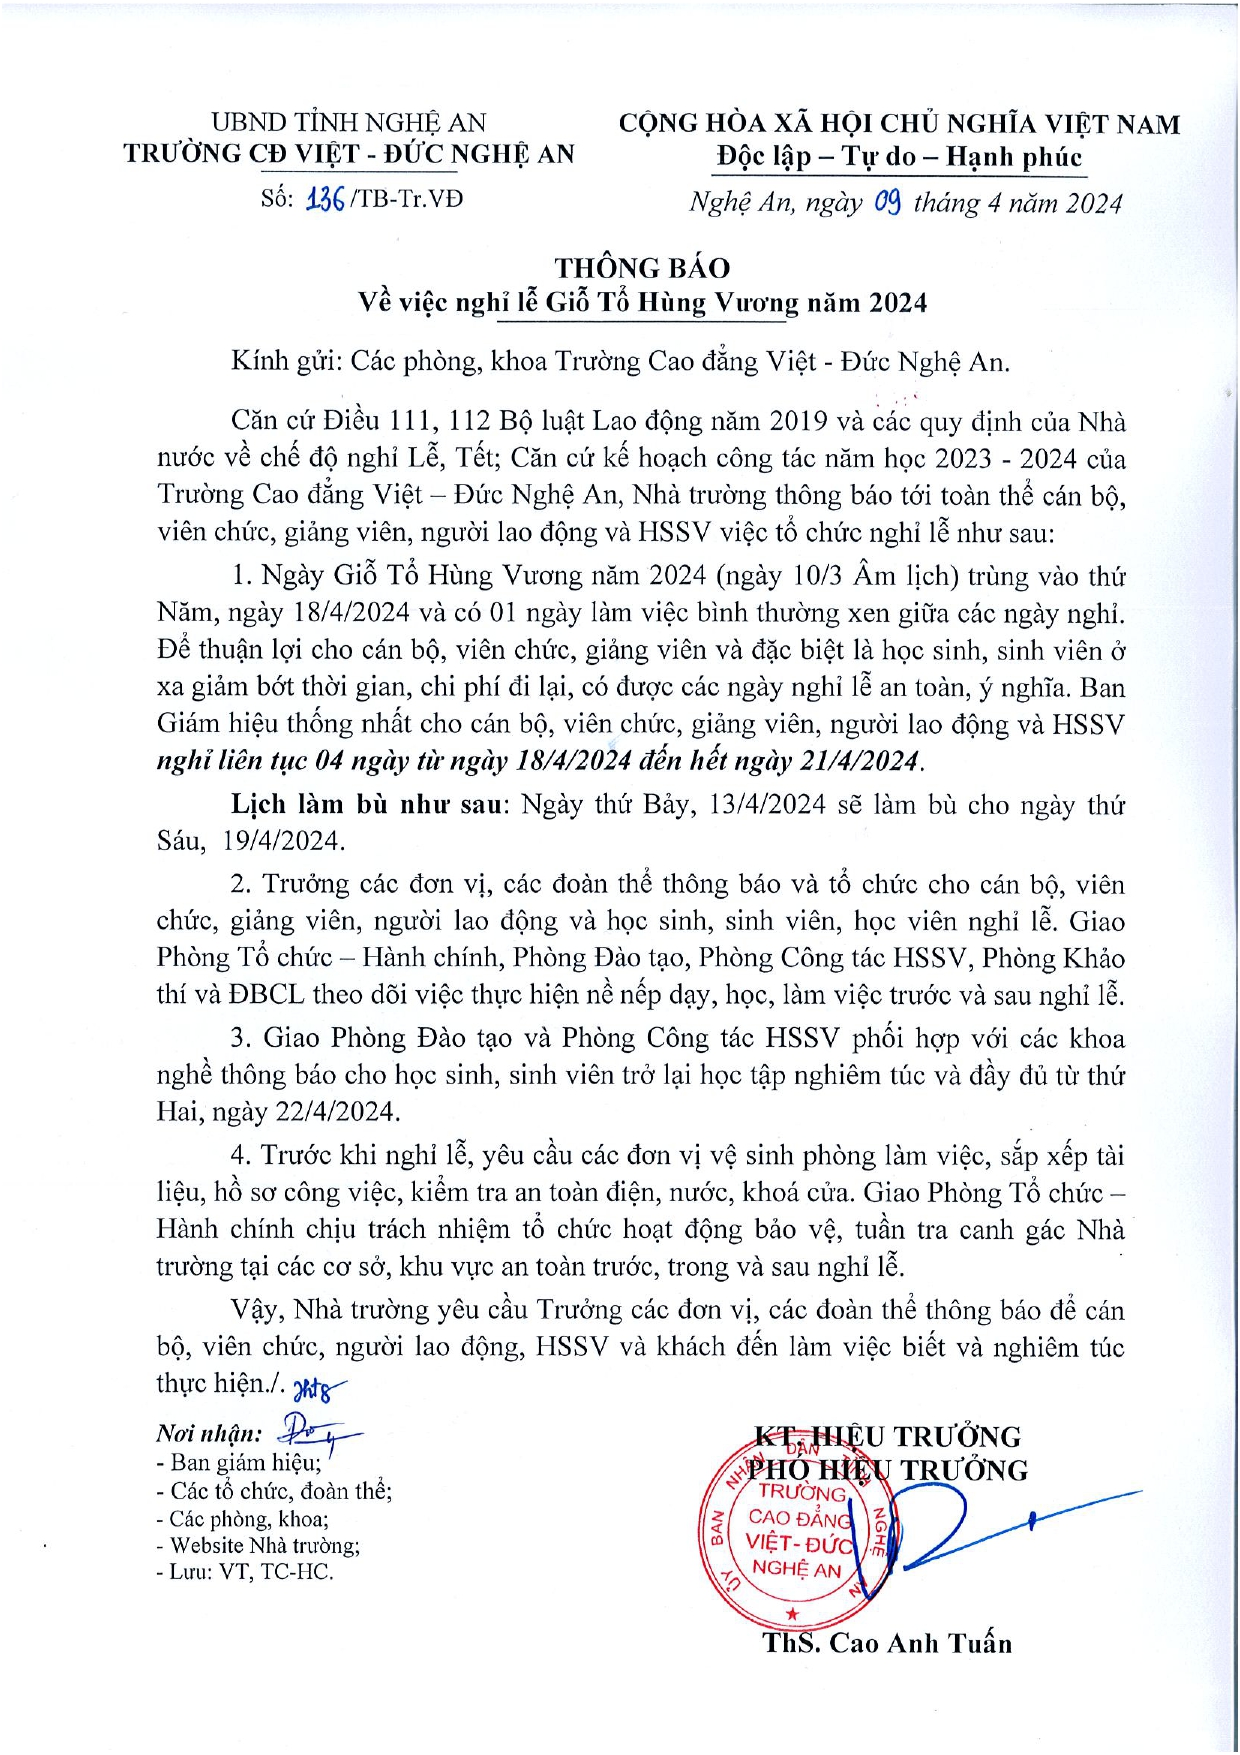 Thông báo số 136/TB-Tr.VĐ của Trường Cao đẳng Việt - Đức Nghệ An về việc nghỉ Lễ Giỗ Tổ Hùng Vương năm 2024